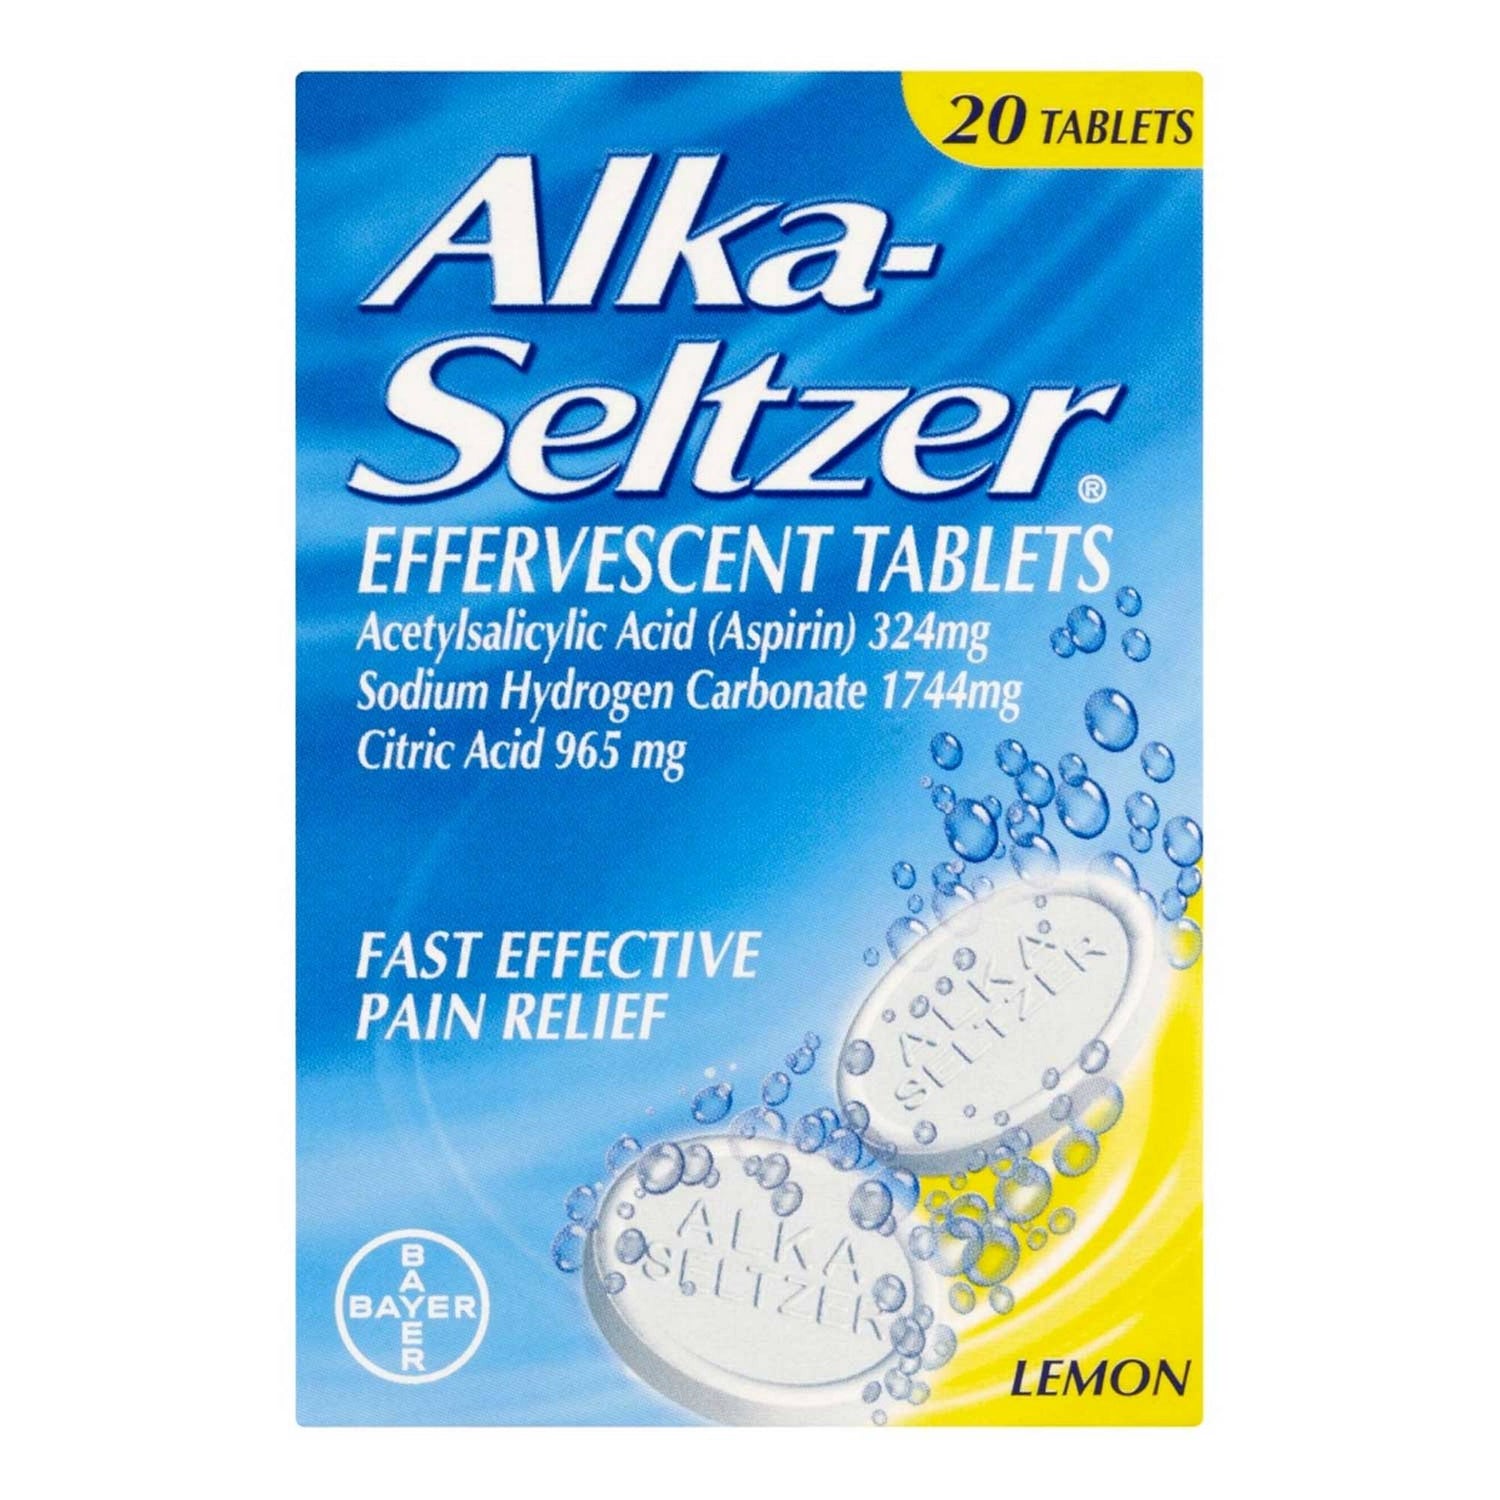 Alka Seltzer Tablets Lemon - 20